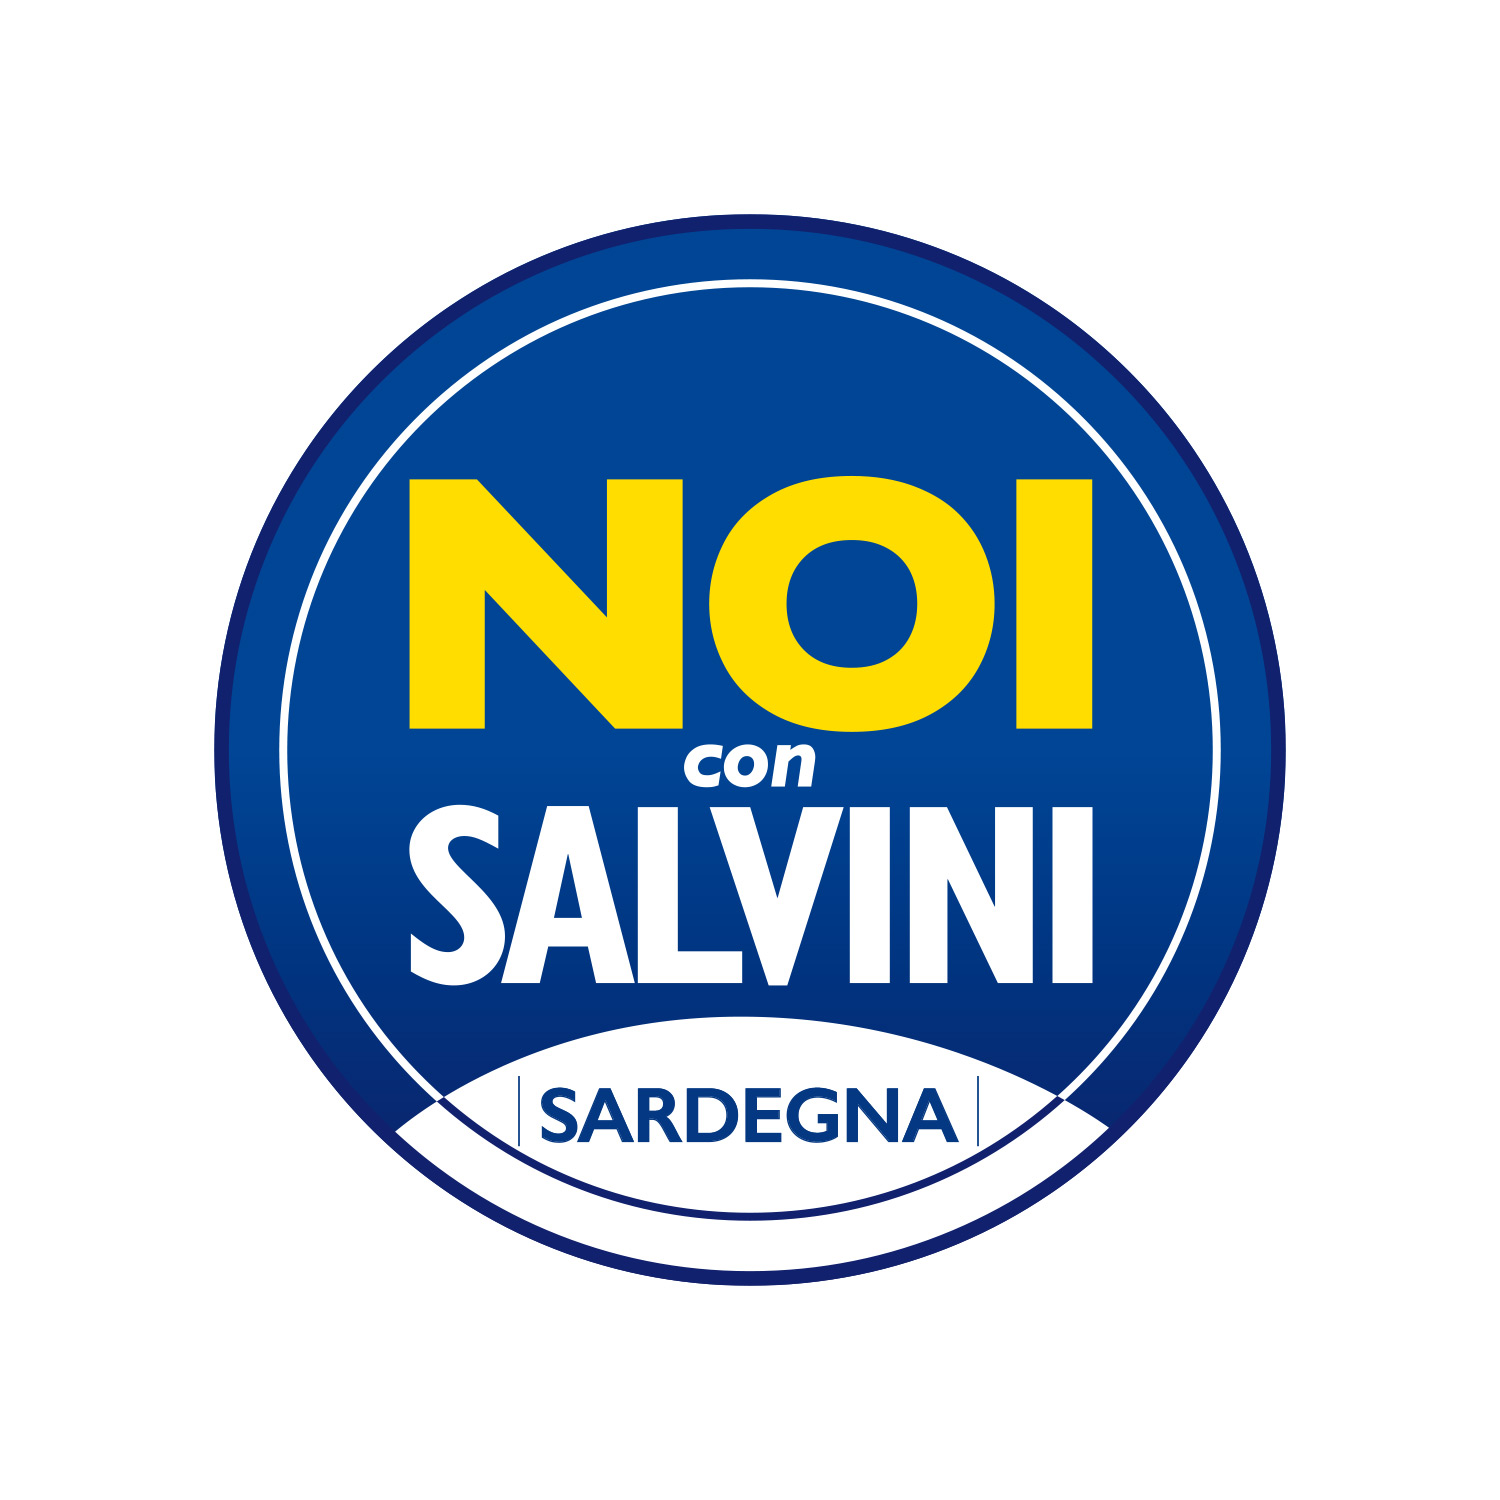 Noi con Salvini – Monserrato: “Organizziamo un incontro civico per discutere con la cittadinanza i problemi del Comune”